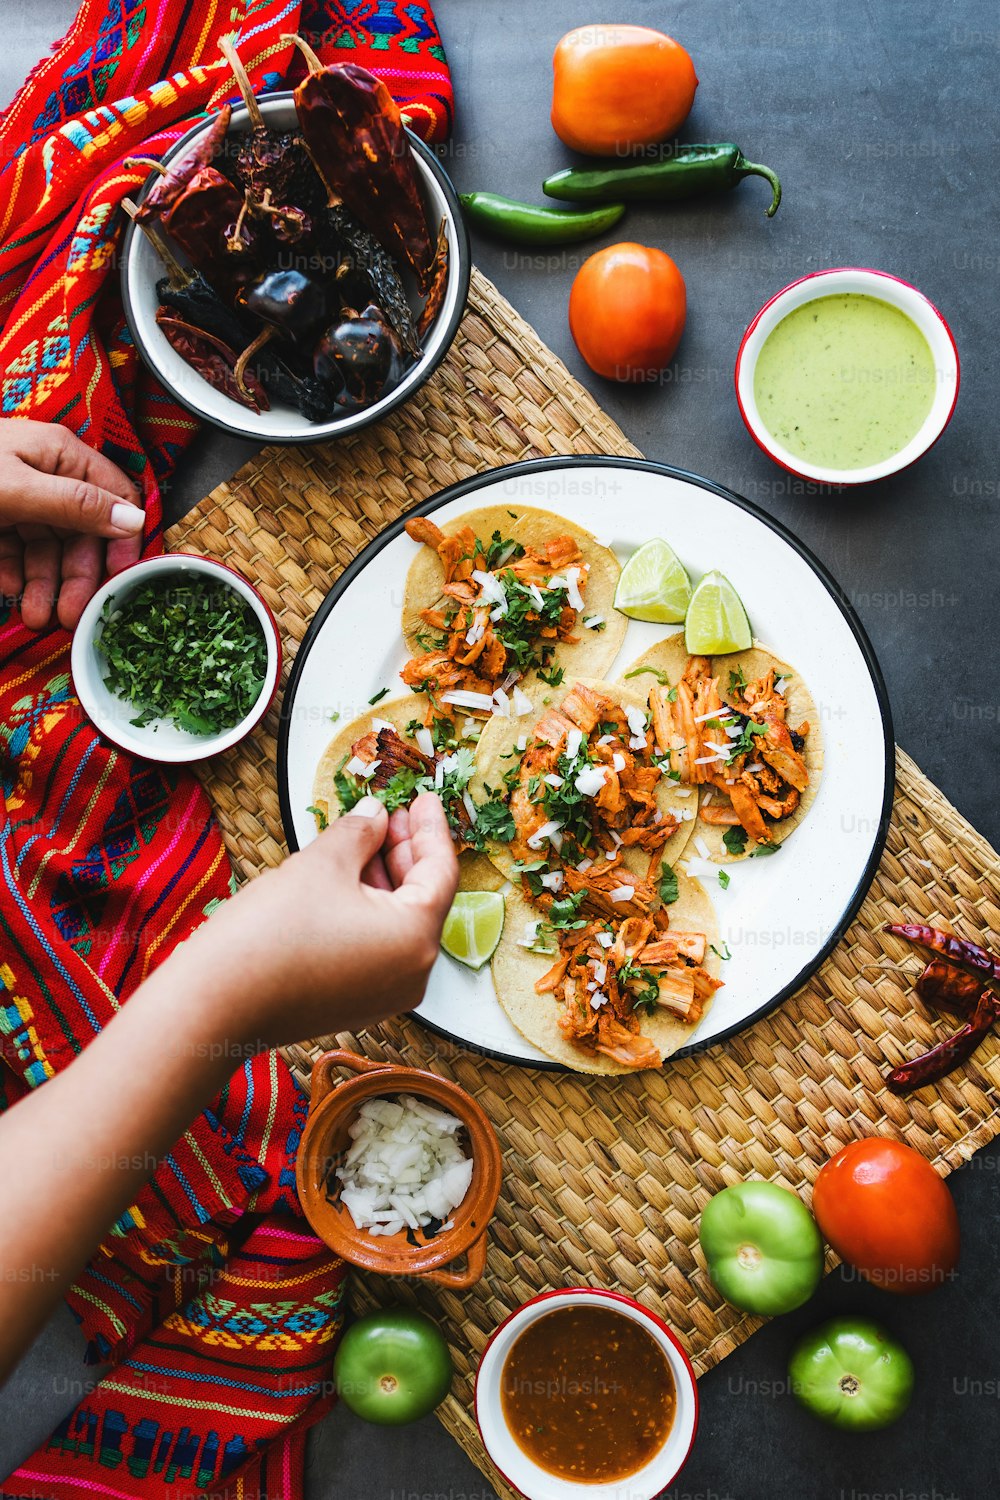 mains de femme latine préparant des tacos mexicains avec des carnitas de porc, de l’avocat, de l’oignon, de la coriandre et de la sauce rouge au Mexique